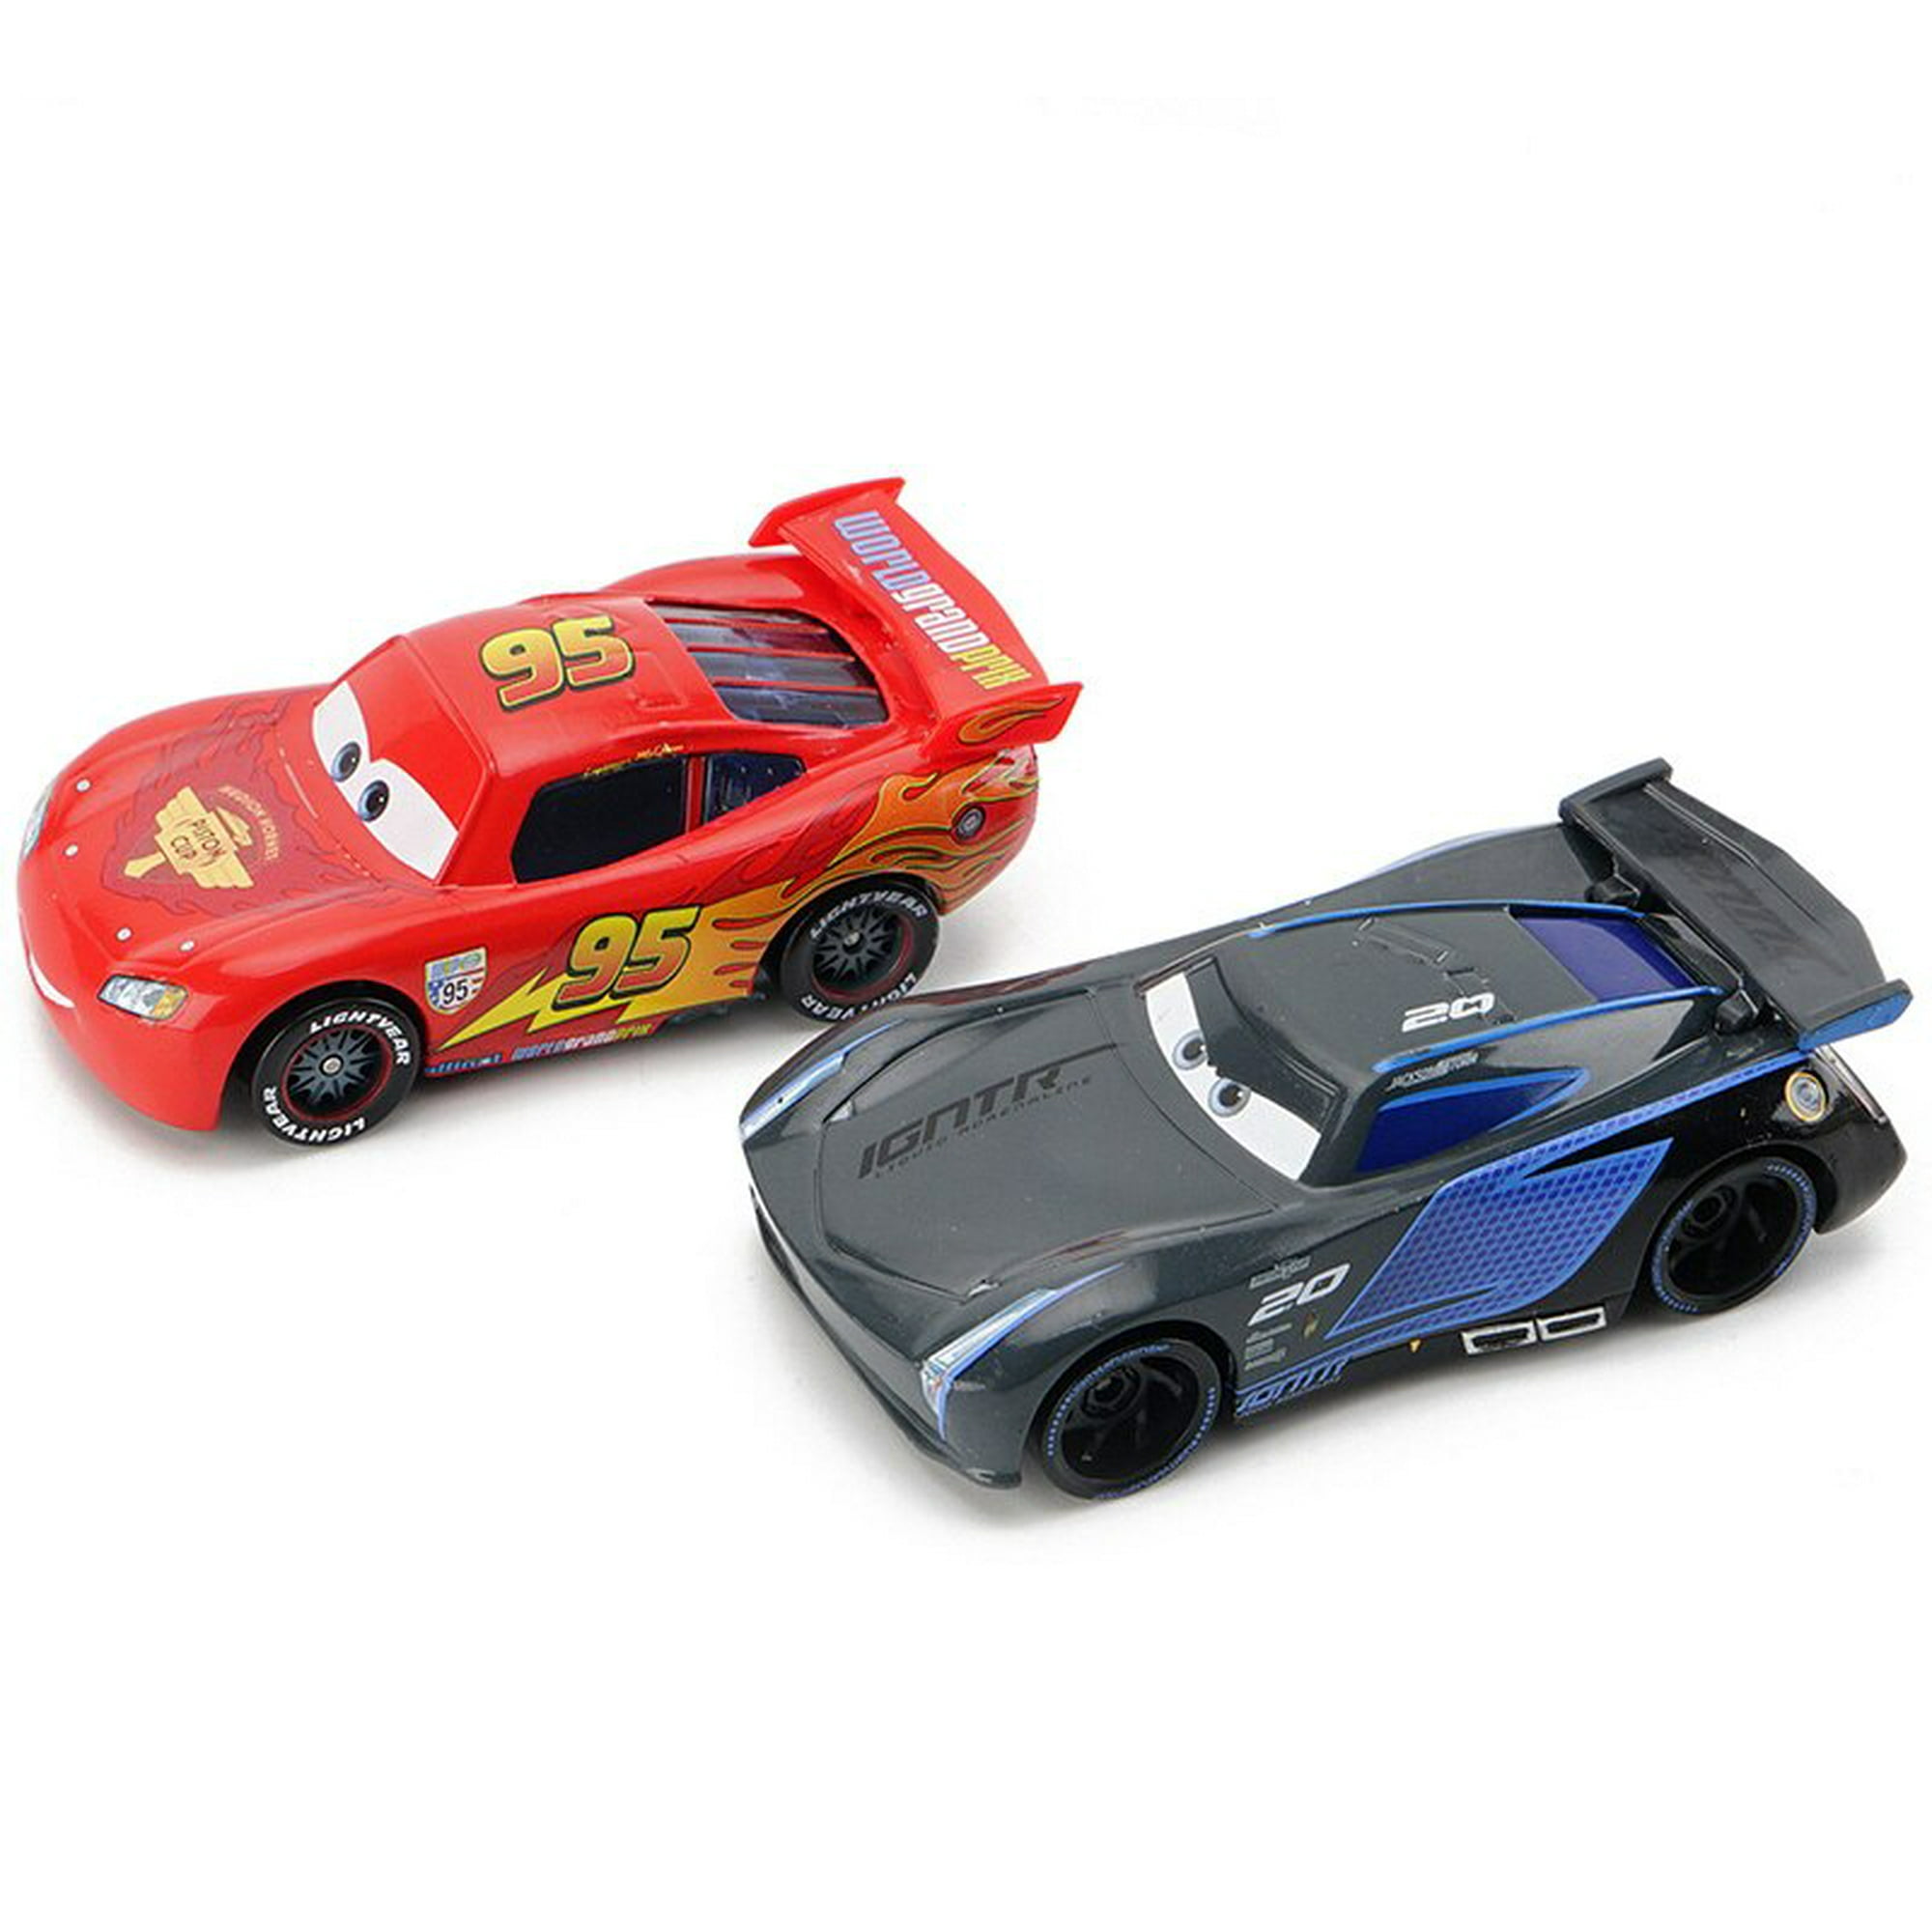 Disney-coches Pixar Cars 2 y 3 para niños, juguete de Metal fundido a  presión, Rayo McQueen, Cruz, Ramirez, Jackson, Storm, modelo de coche,  regalos de cumpleaños, 1:55